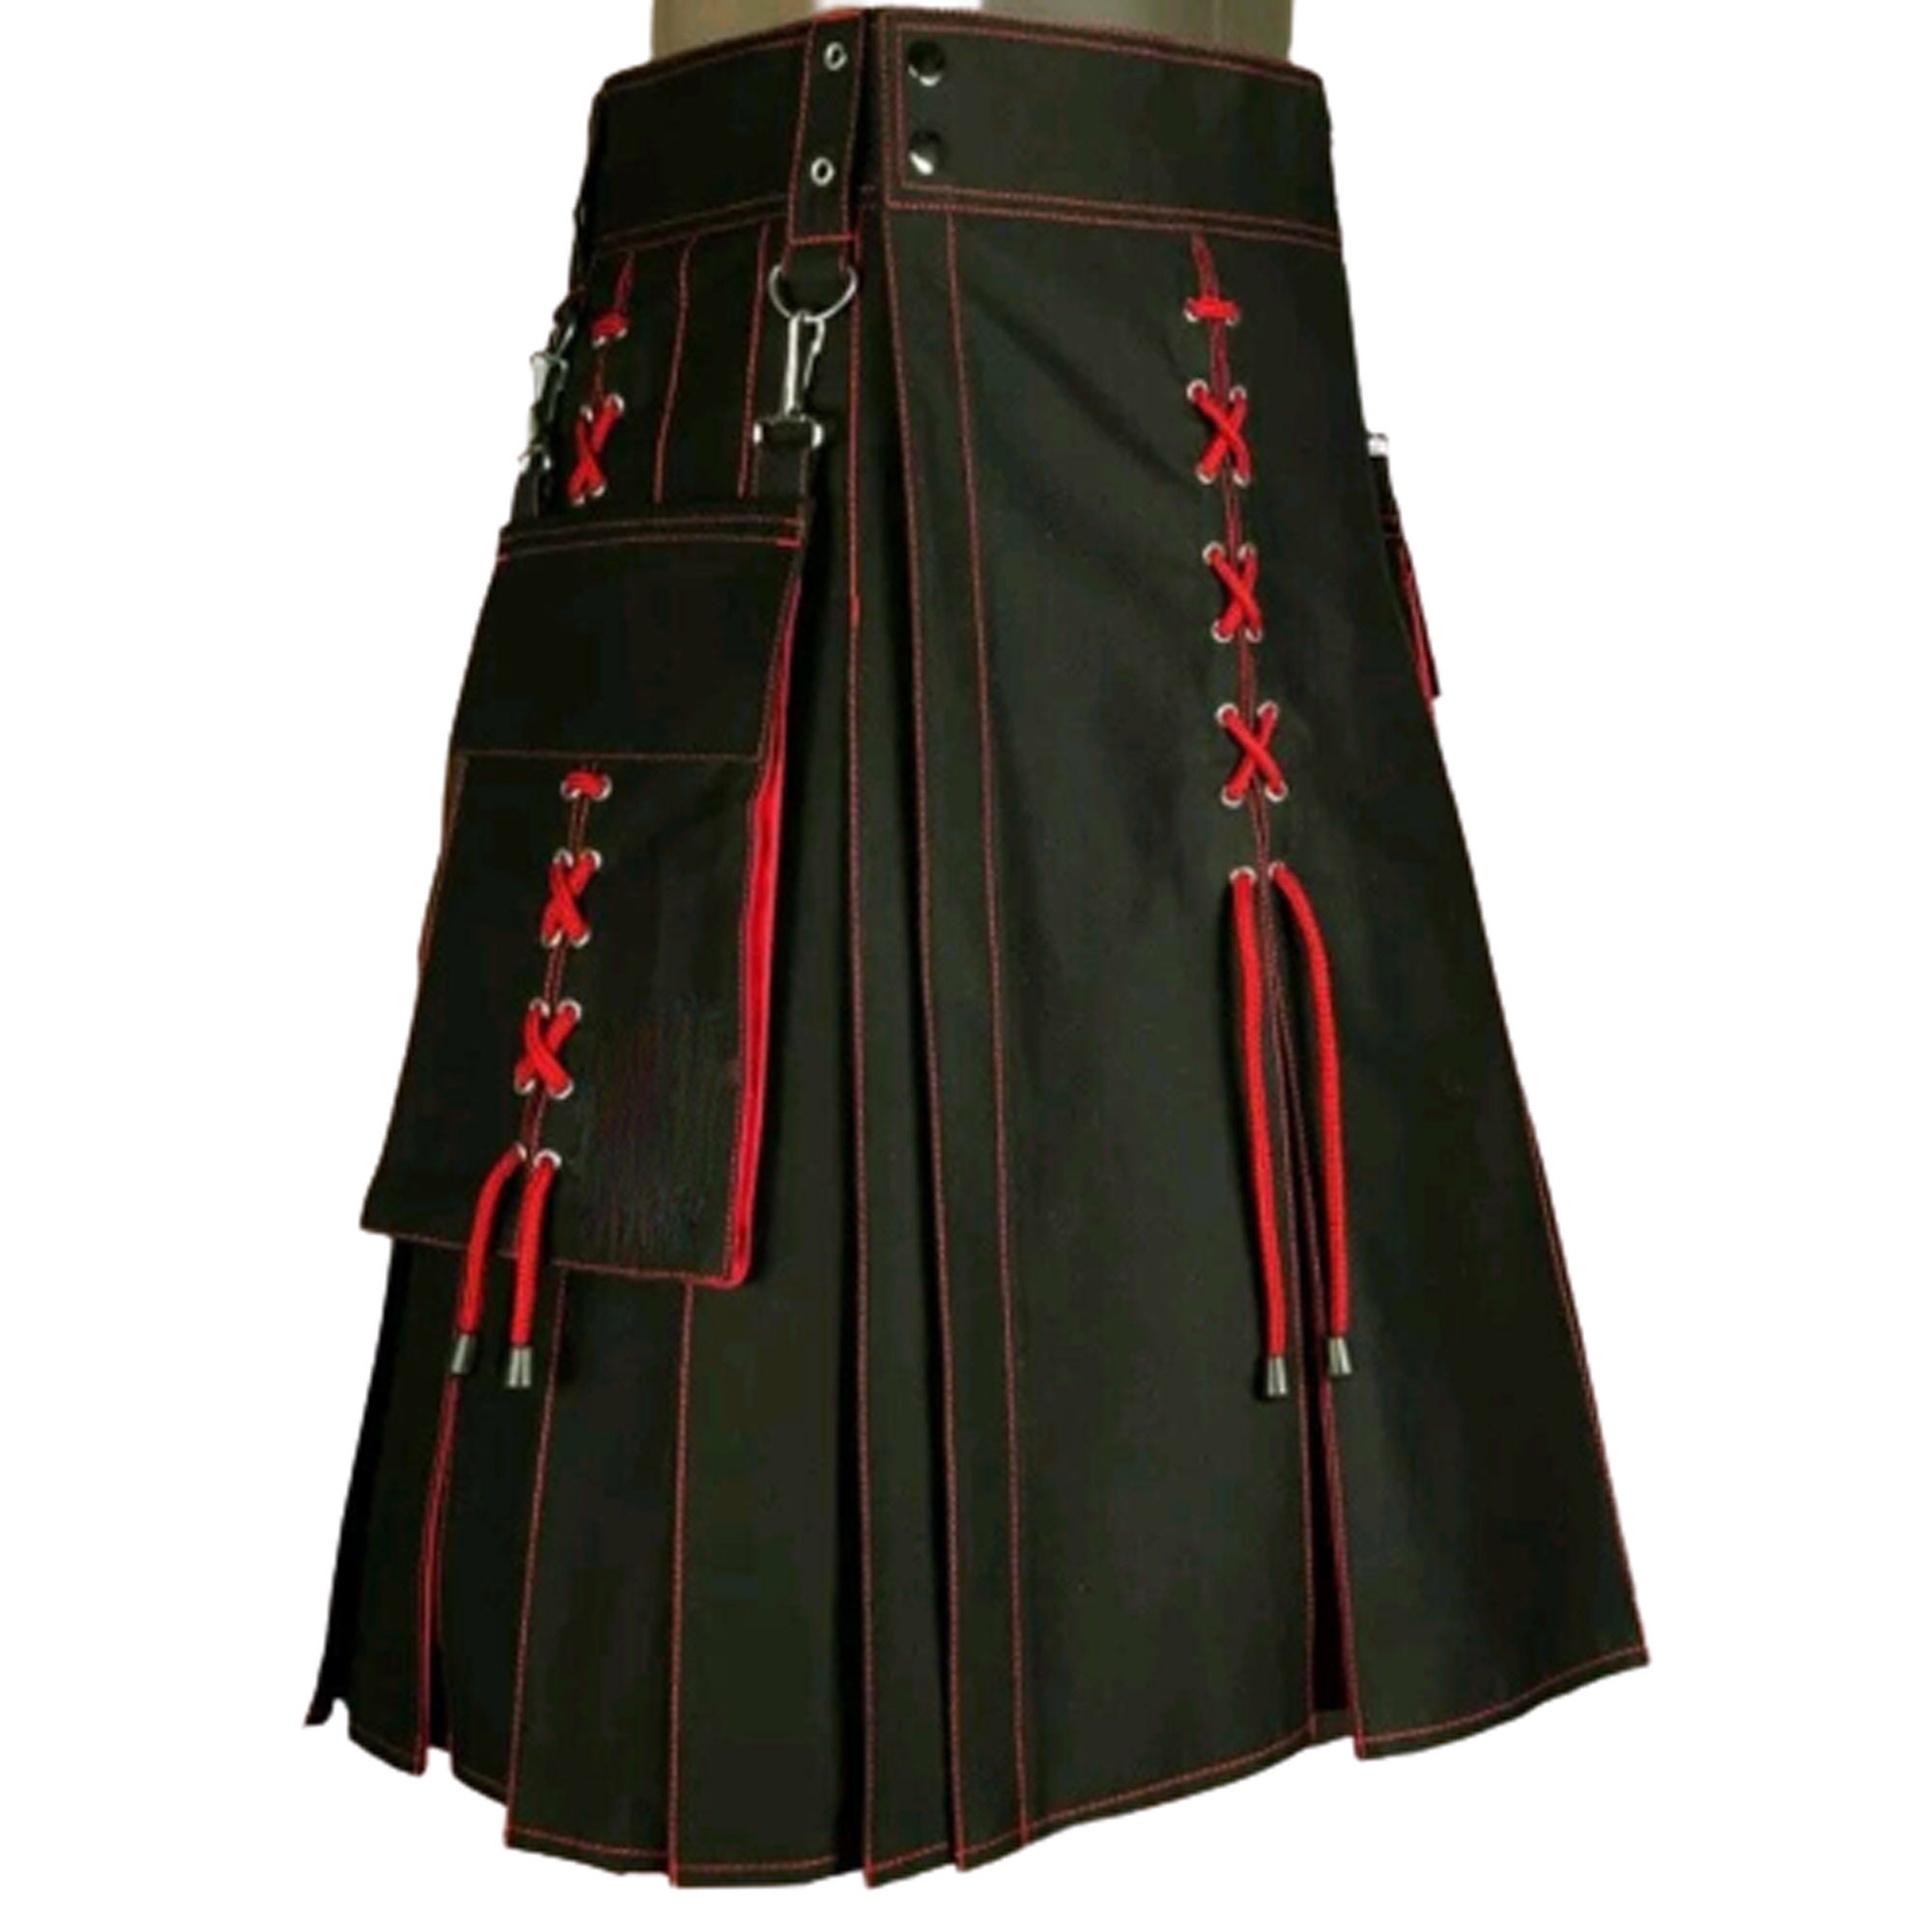 New Black and Red Scottish Stunning utility kilt | Etsy